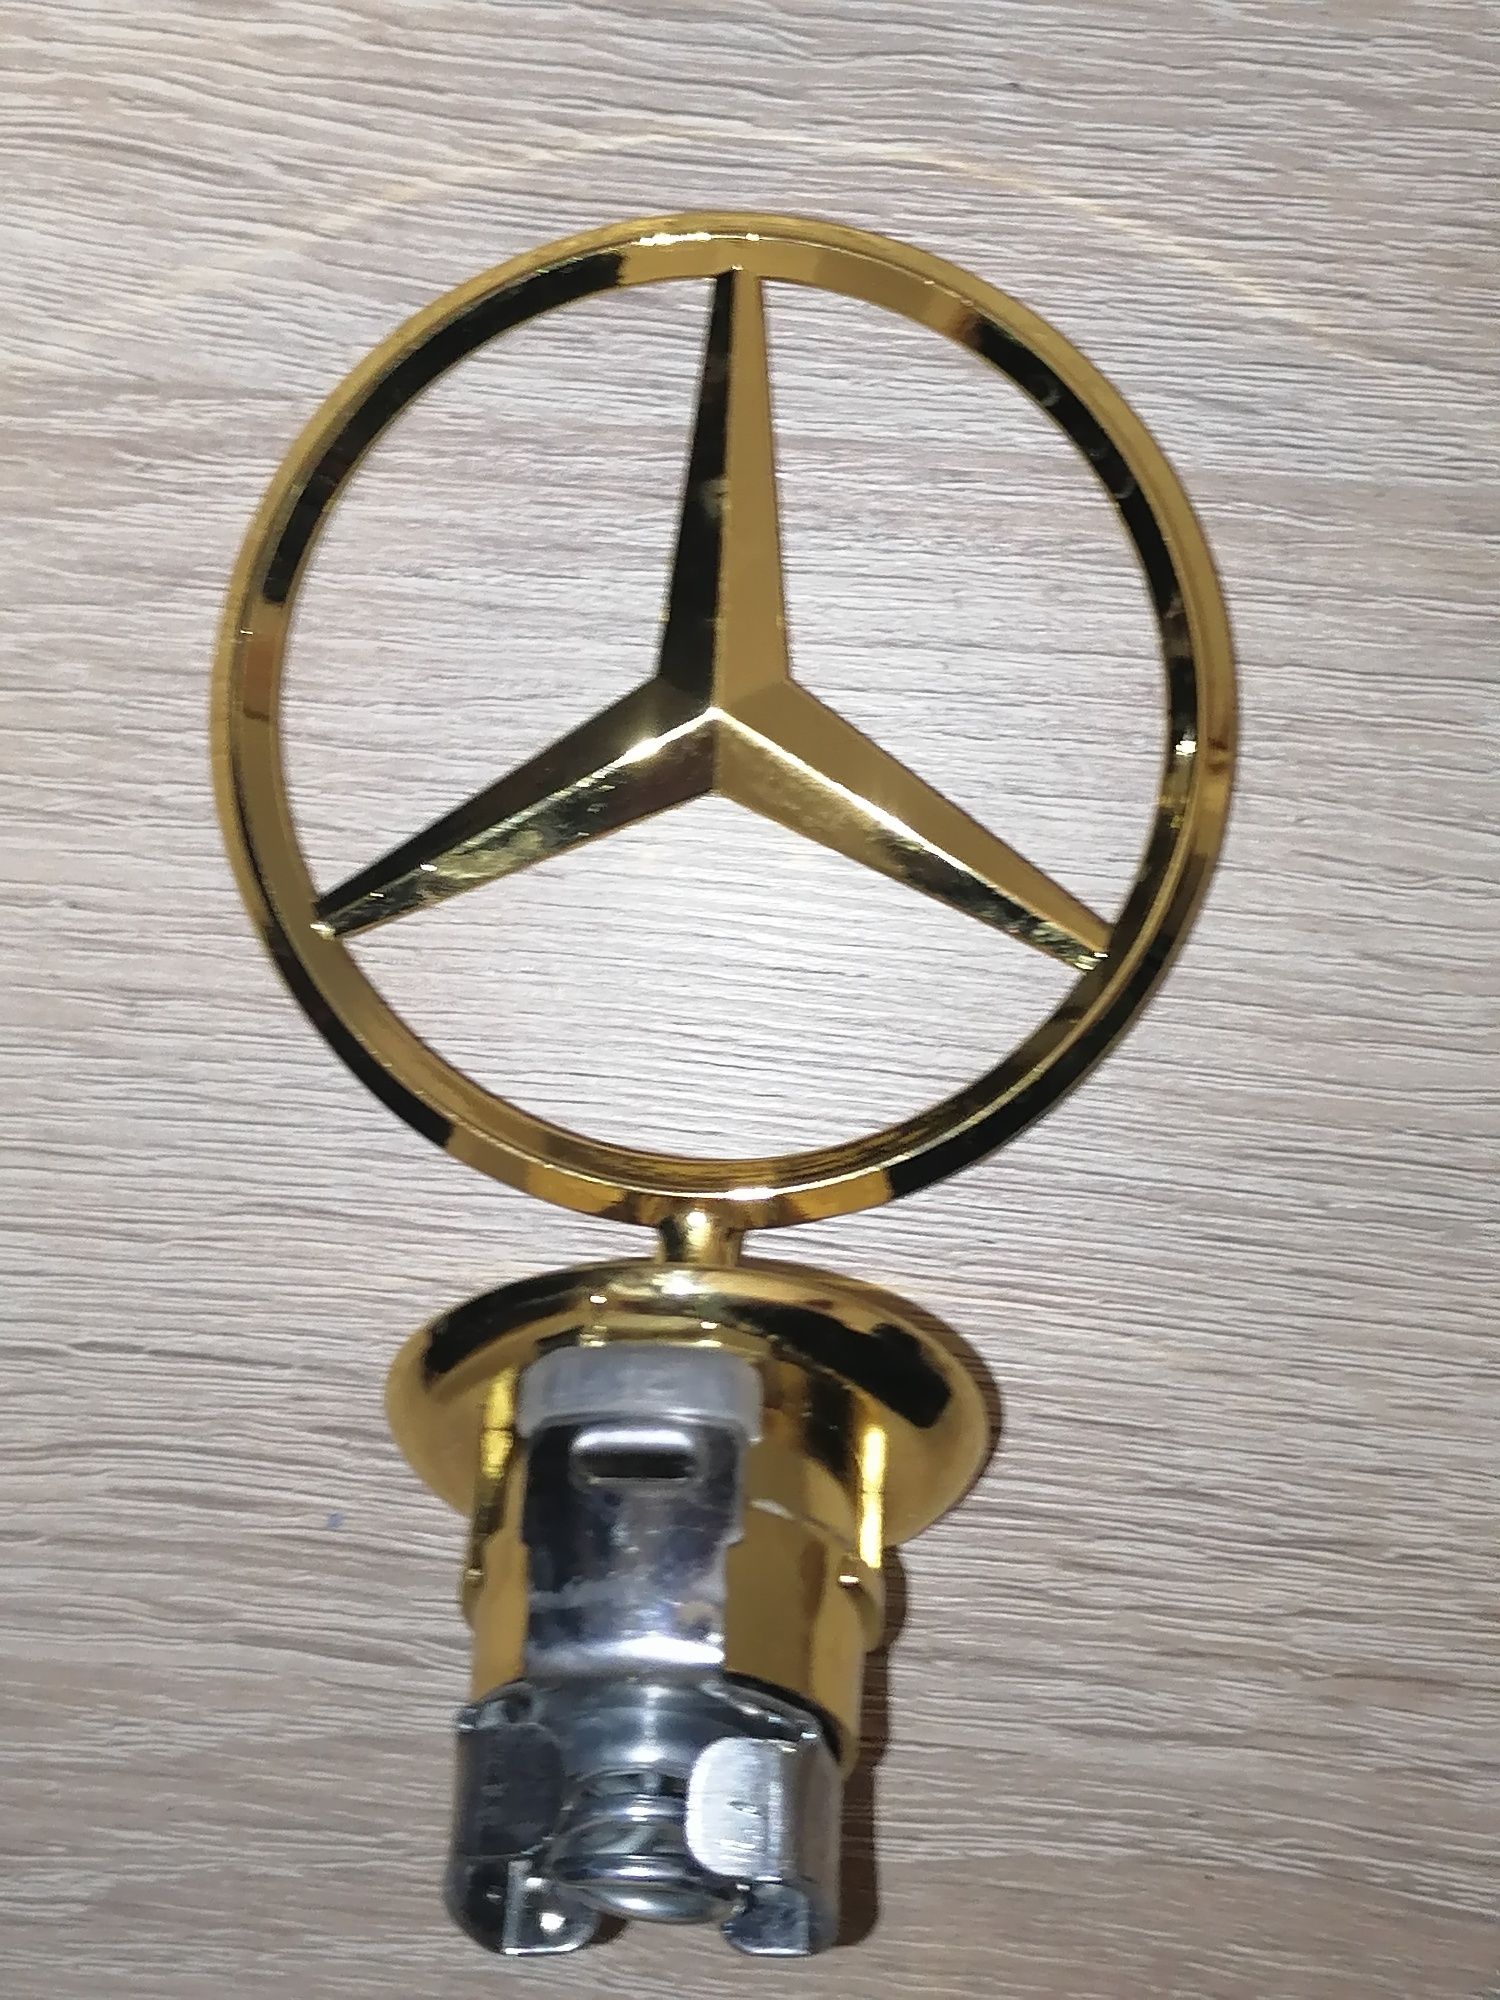 Gwiazda emblemat celownik Mercedes złoty złota